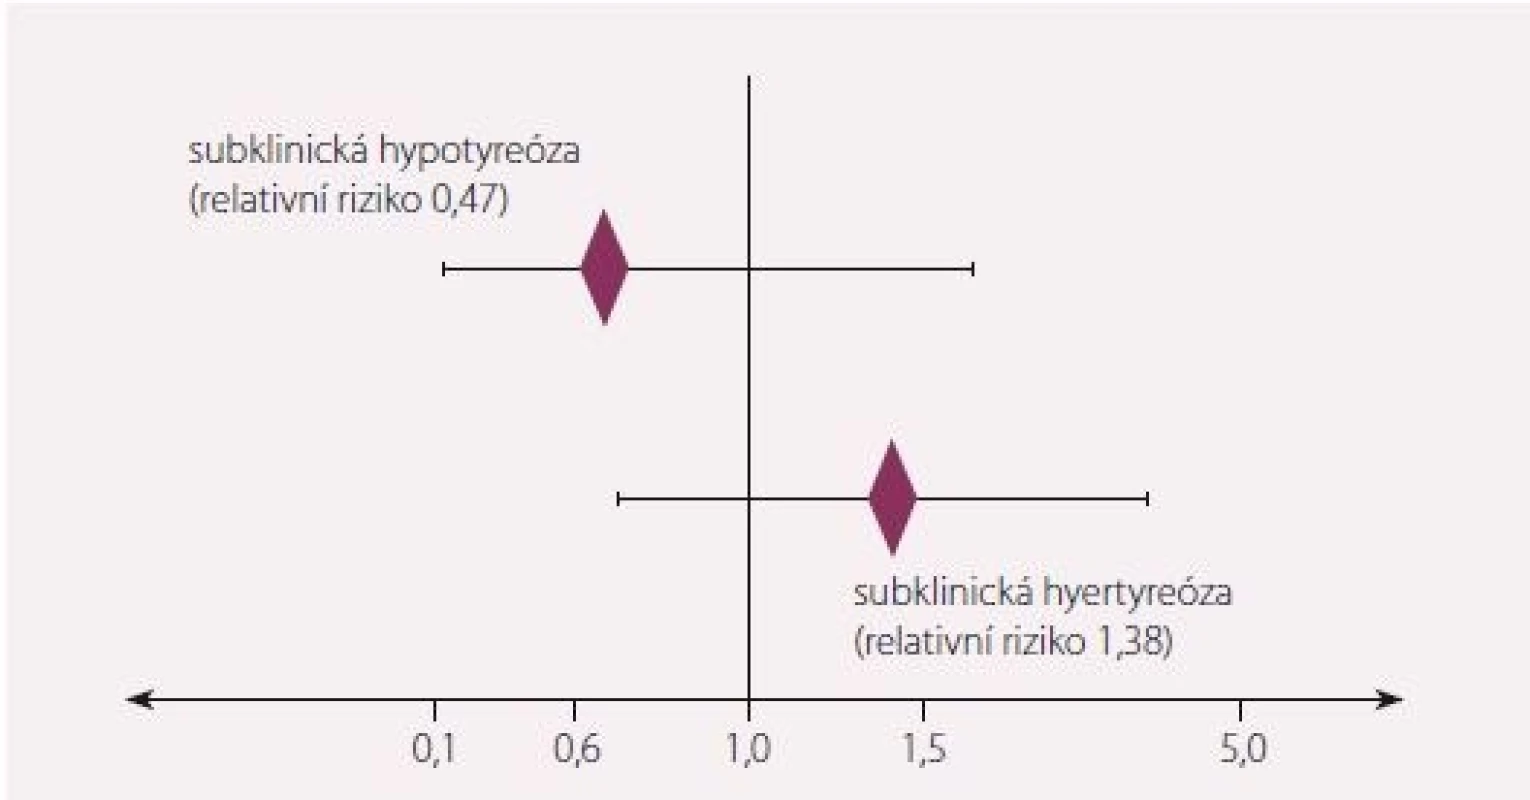 Relativní riziko kardiovaskulární morbidity u subklinické hypo- a hypertyreózy
u osob starších 80 let. Převzato a upraveno dle [3].